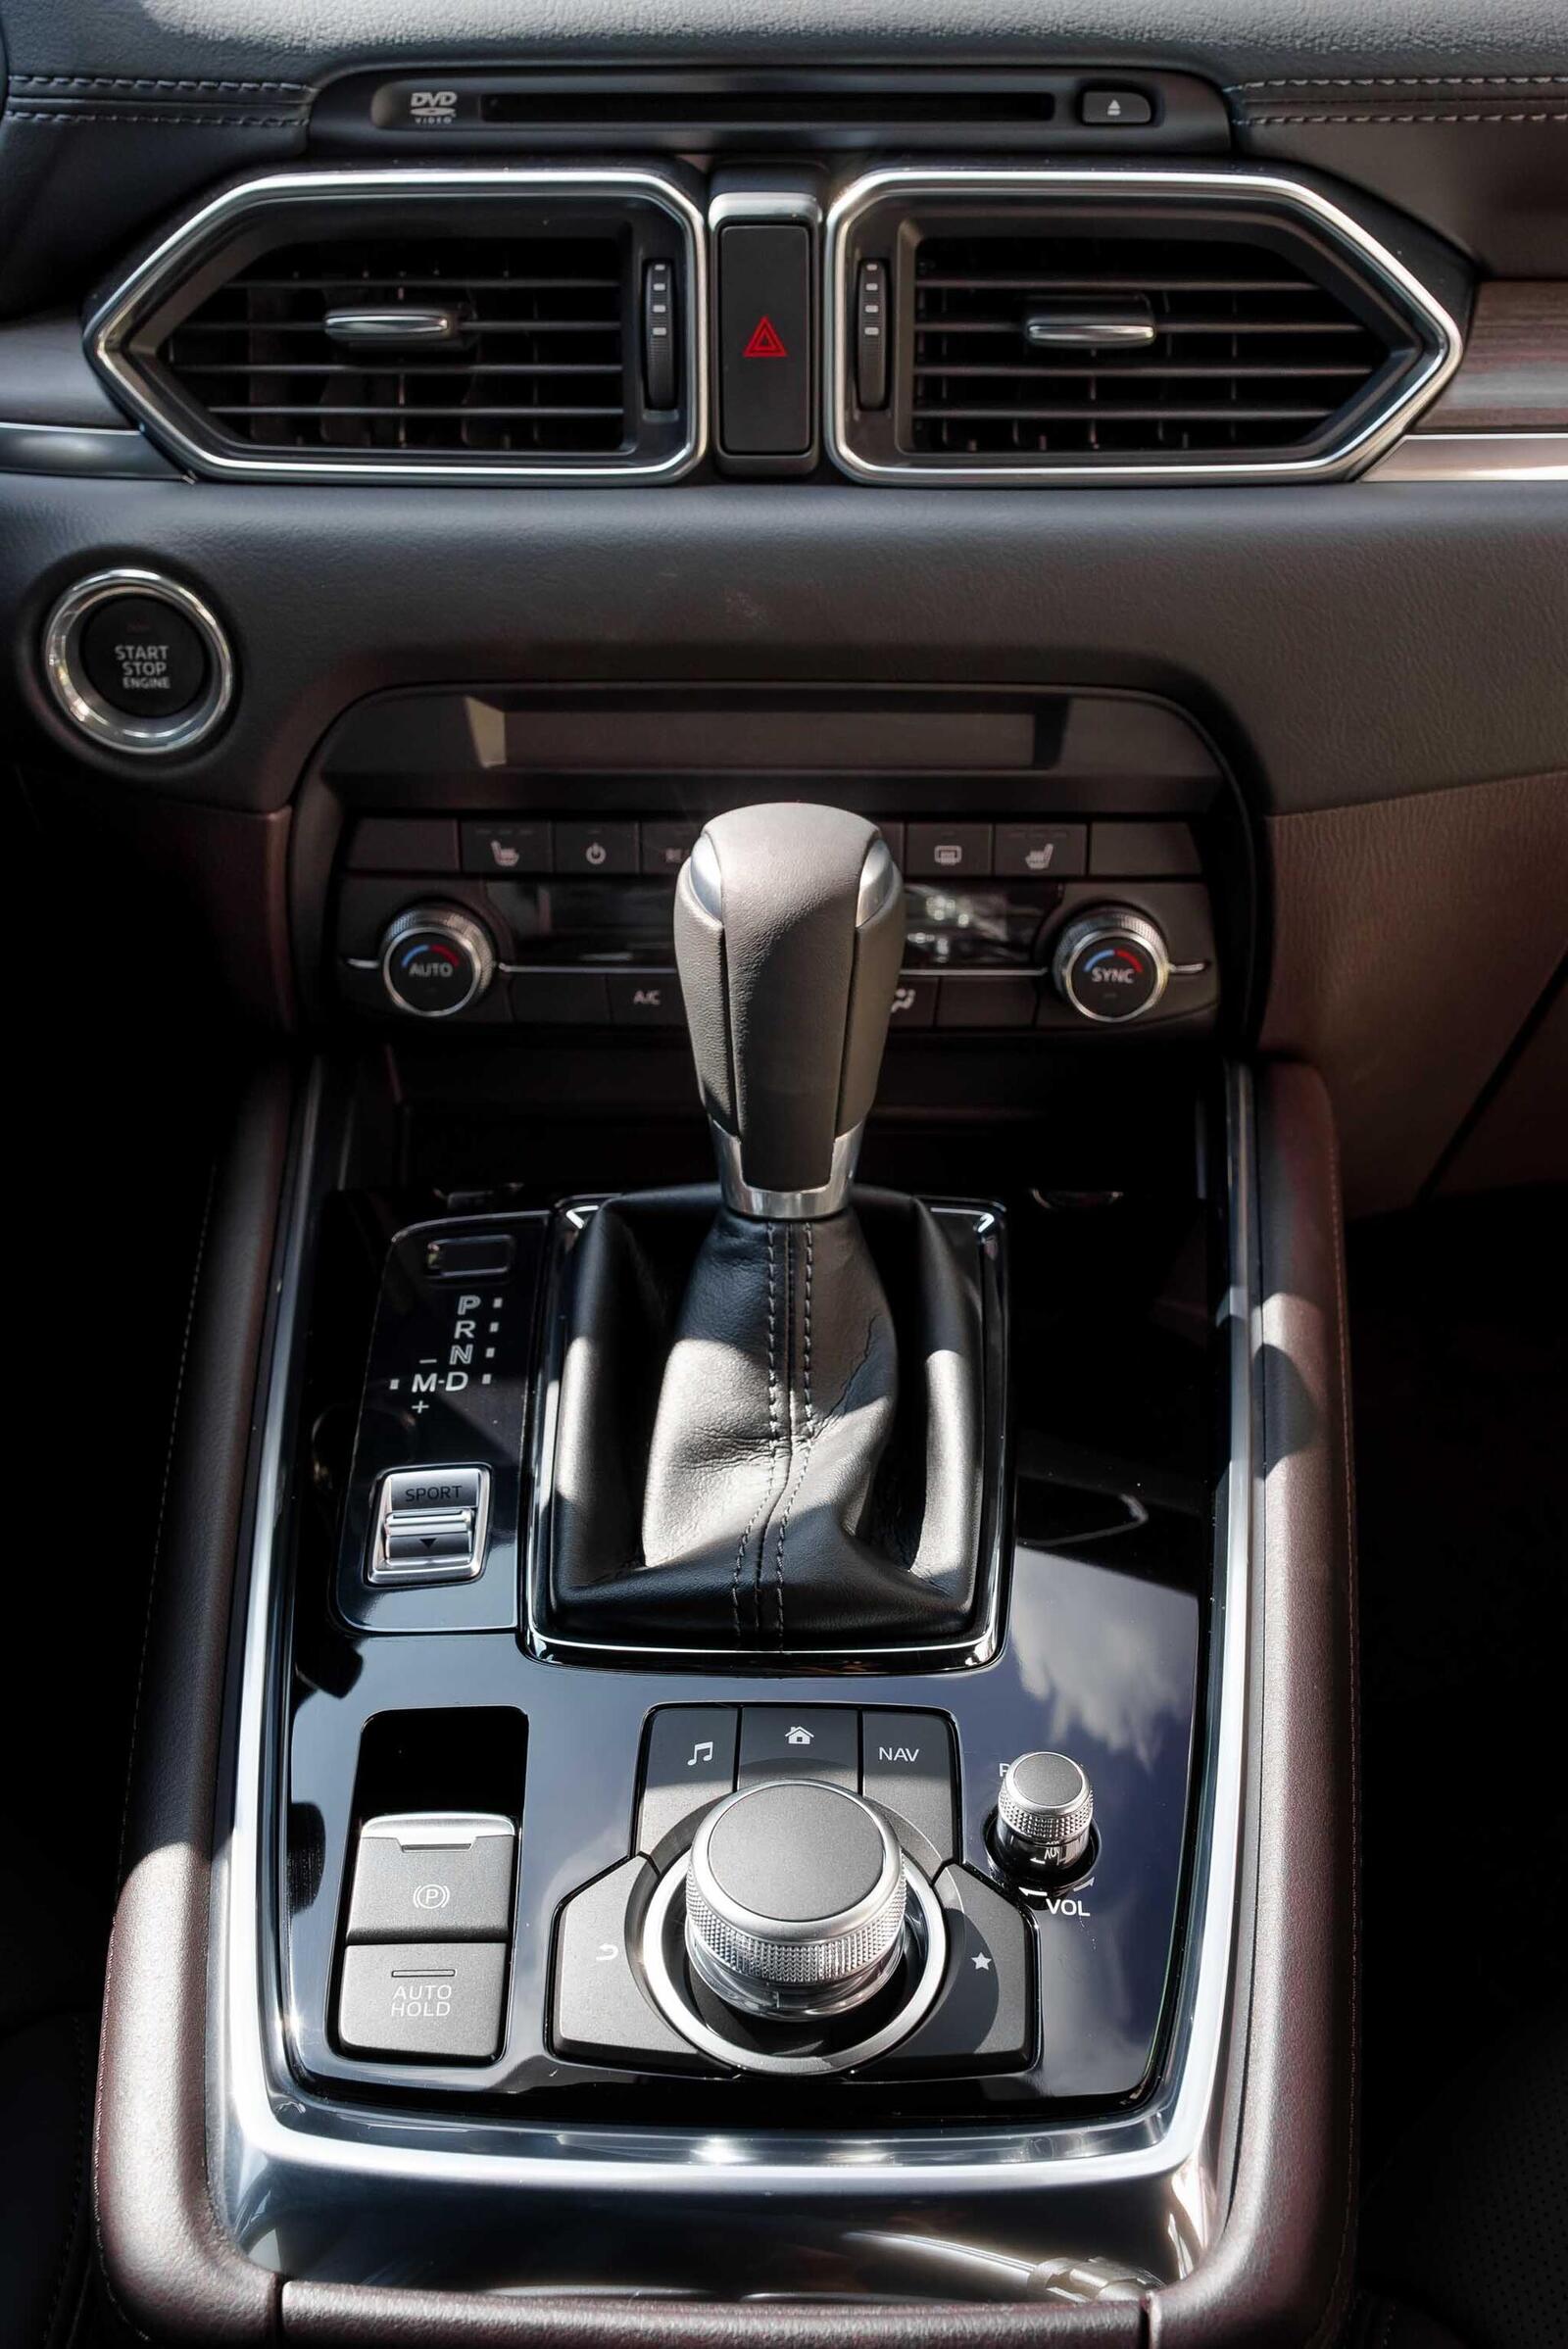 So sánh trang bị tiện nghi và an toàn của các phiên bản Mazda CX-8 - Hình 11